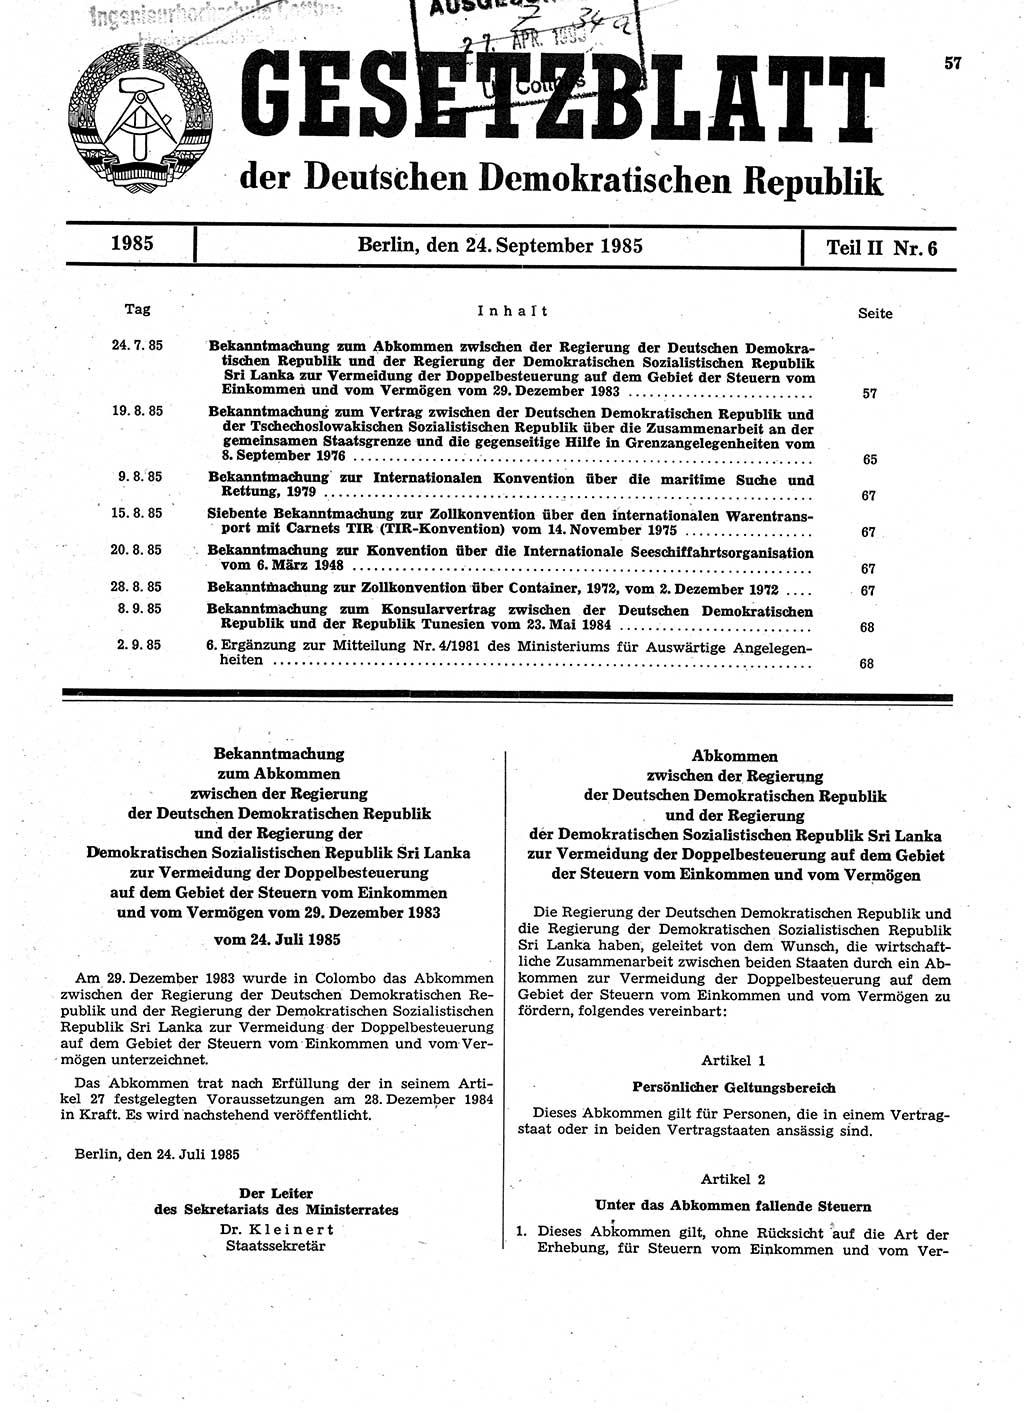 Gesetzblatt (GBl.) der Deutschen Demokratischen Republik (DDR) Teil ⅠⅠ 1985, Seite 57 (GBl. DDR ⅠⅠ 1985, S. 57)